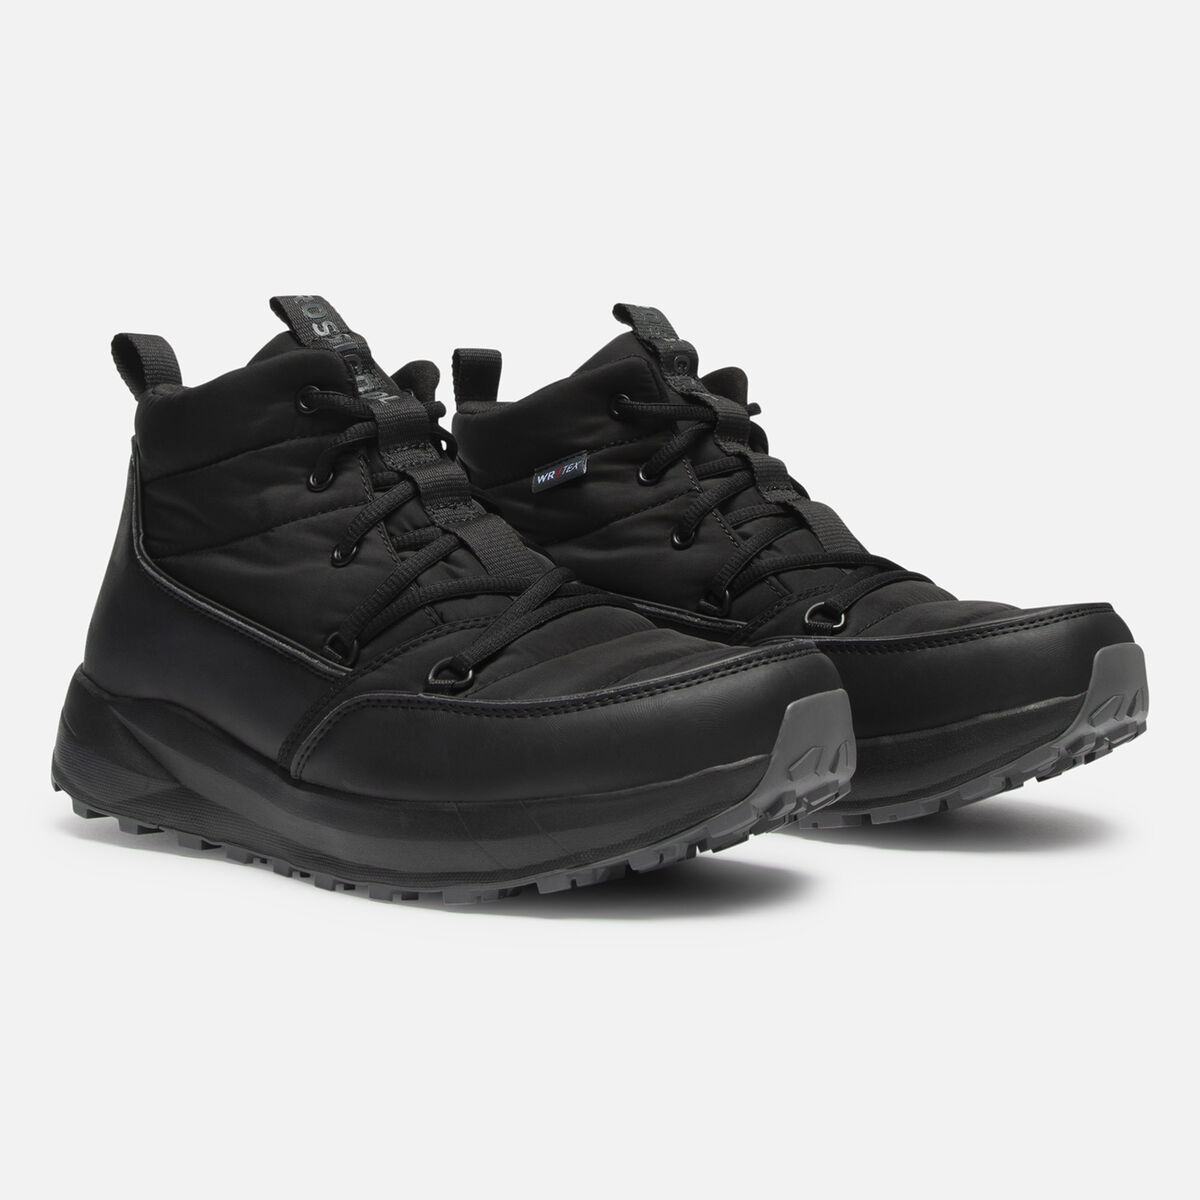 Men's Resort Waterproof Black Boots